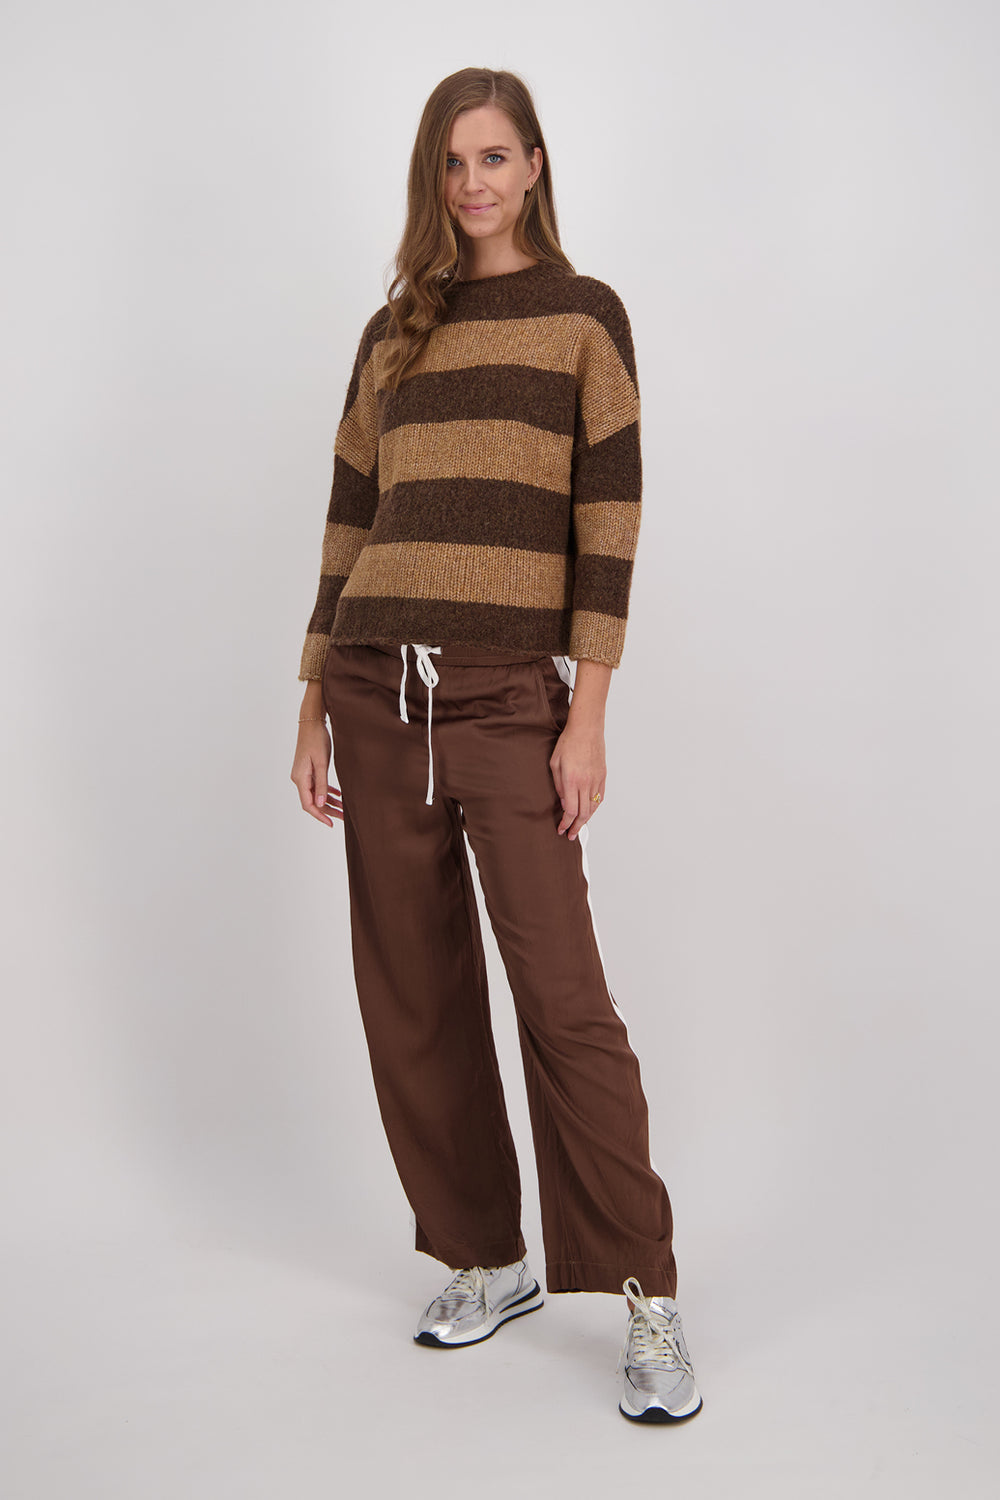 Briarwood Diaz Chocolate/Camel Stripe Sweater